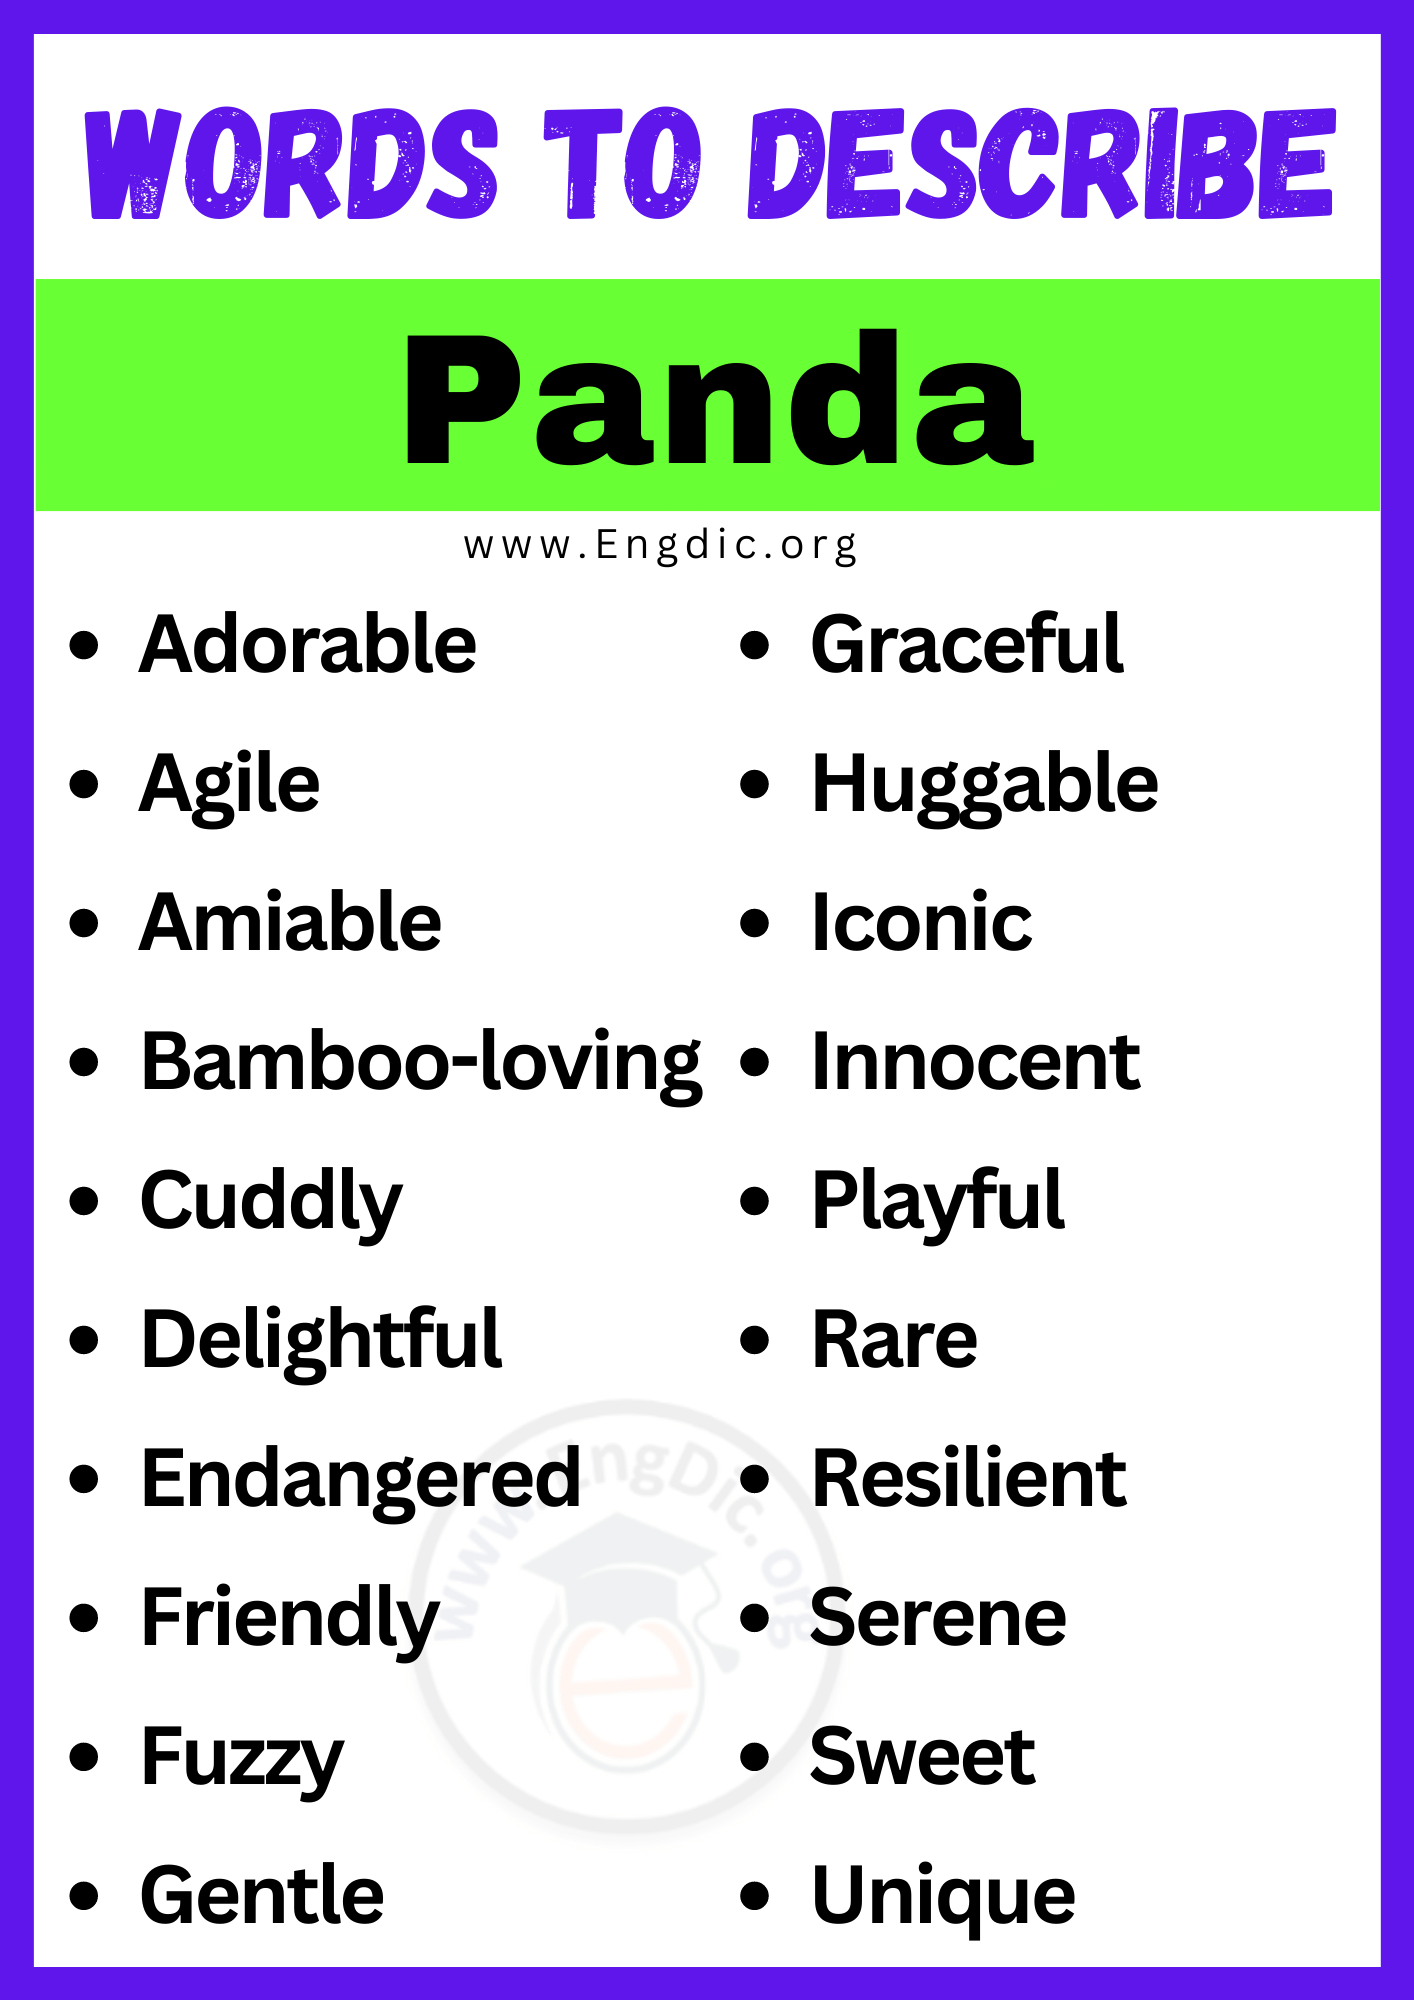 Words to Describe Panda